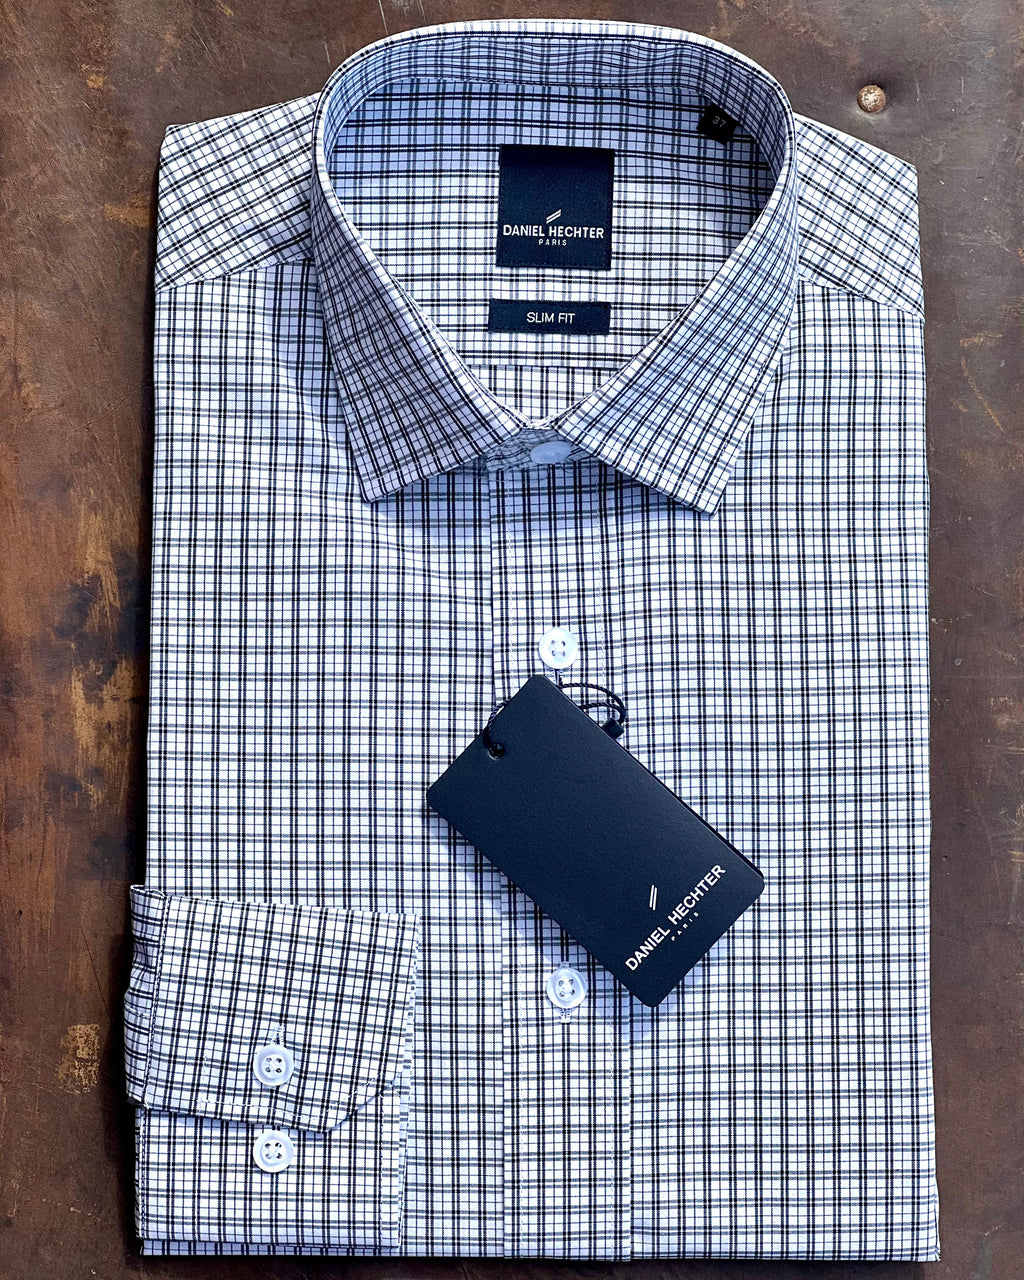 Long sleeve men's shirt - cotton check by Daniel Hechter